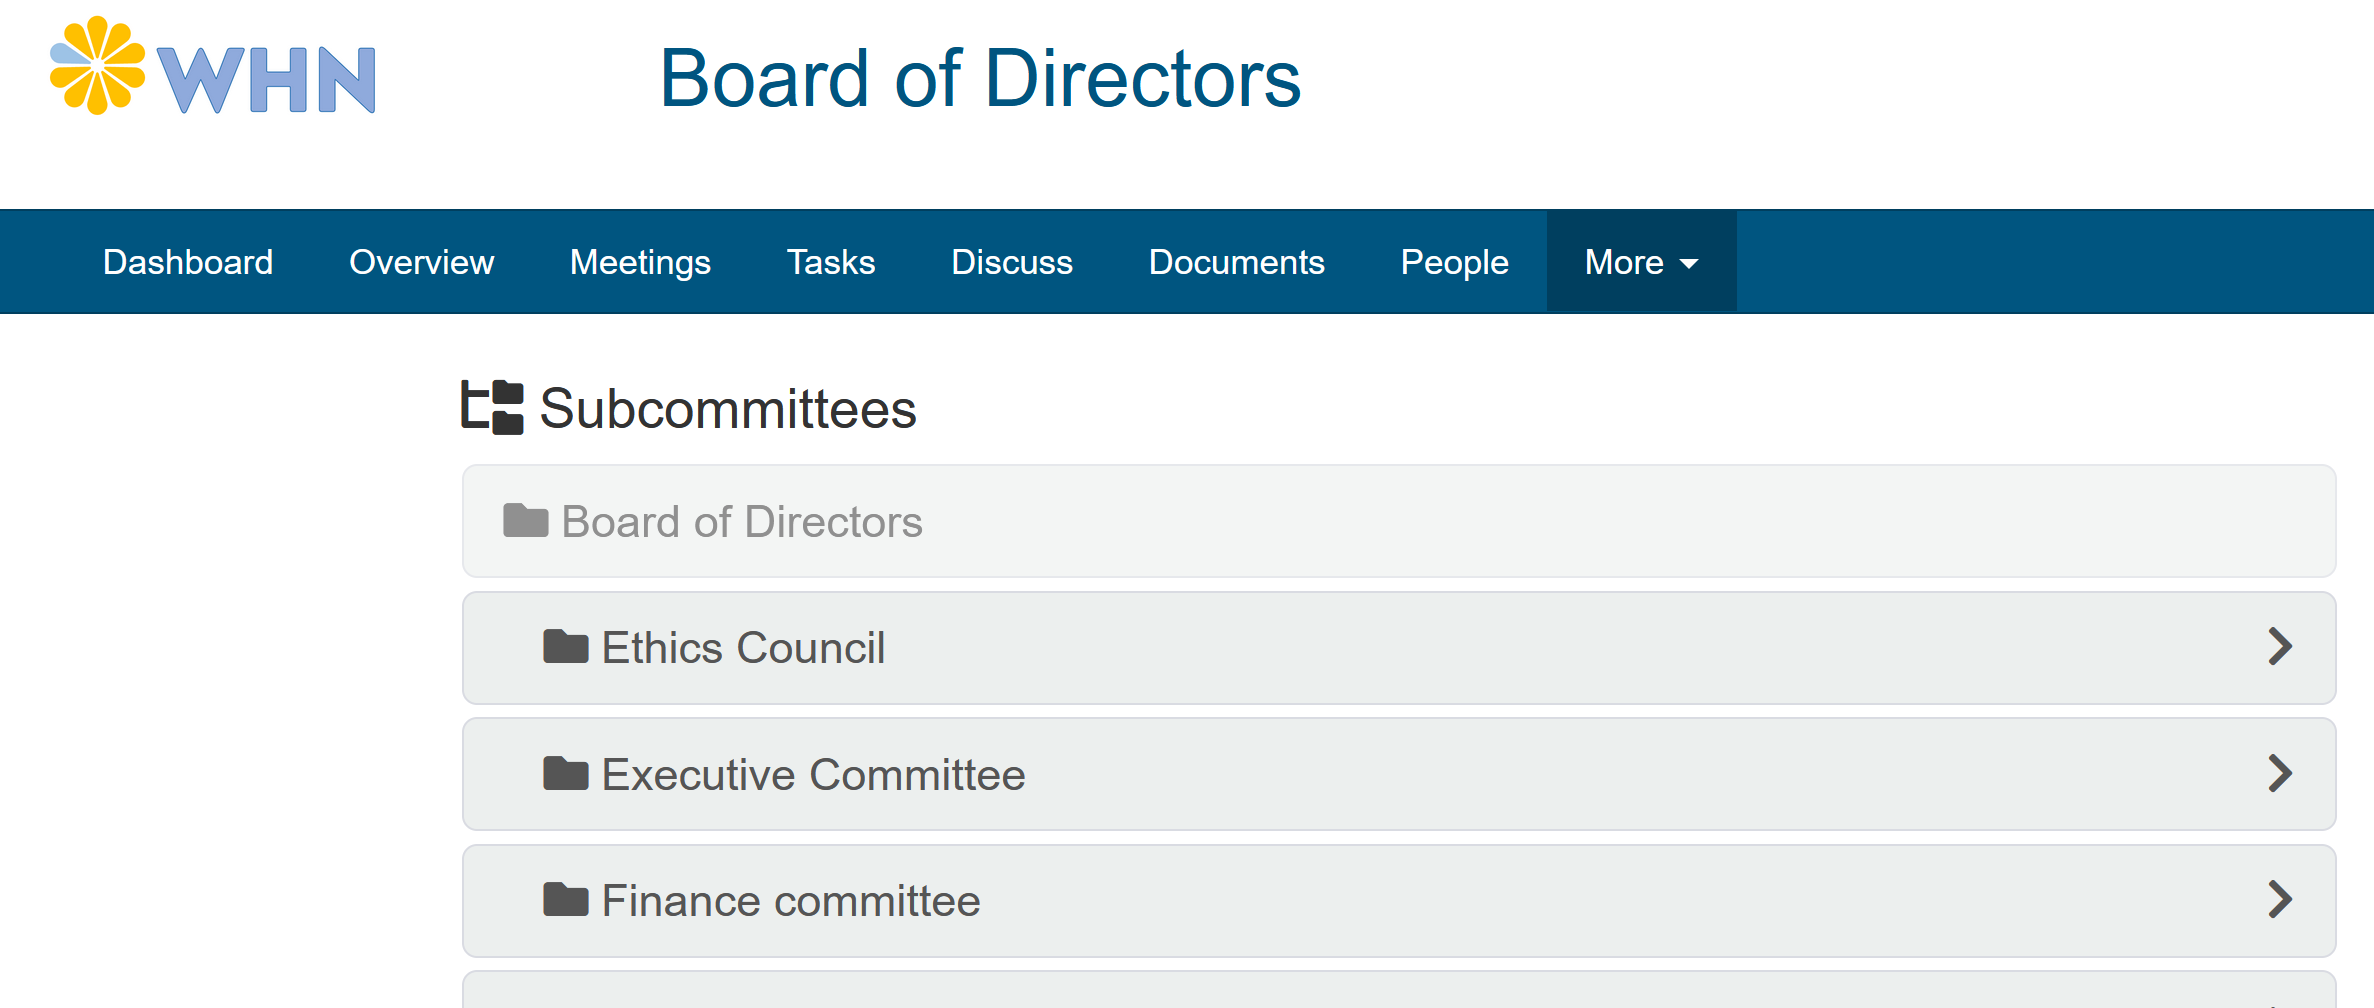 Board committees